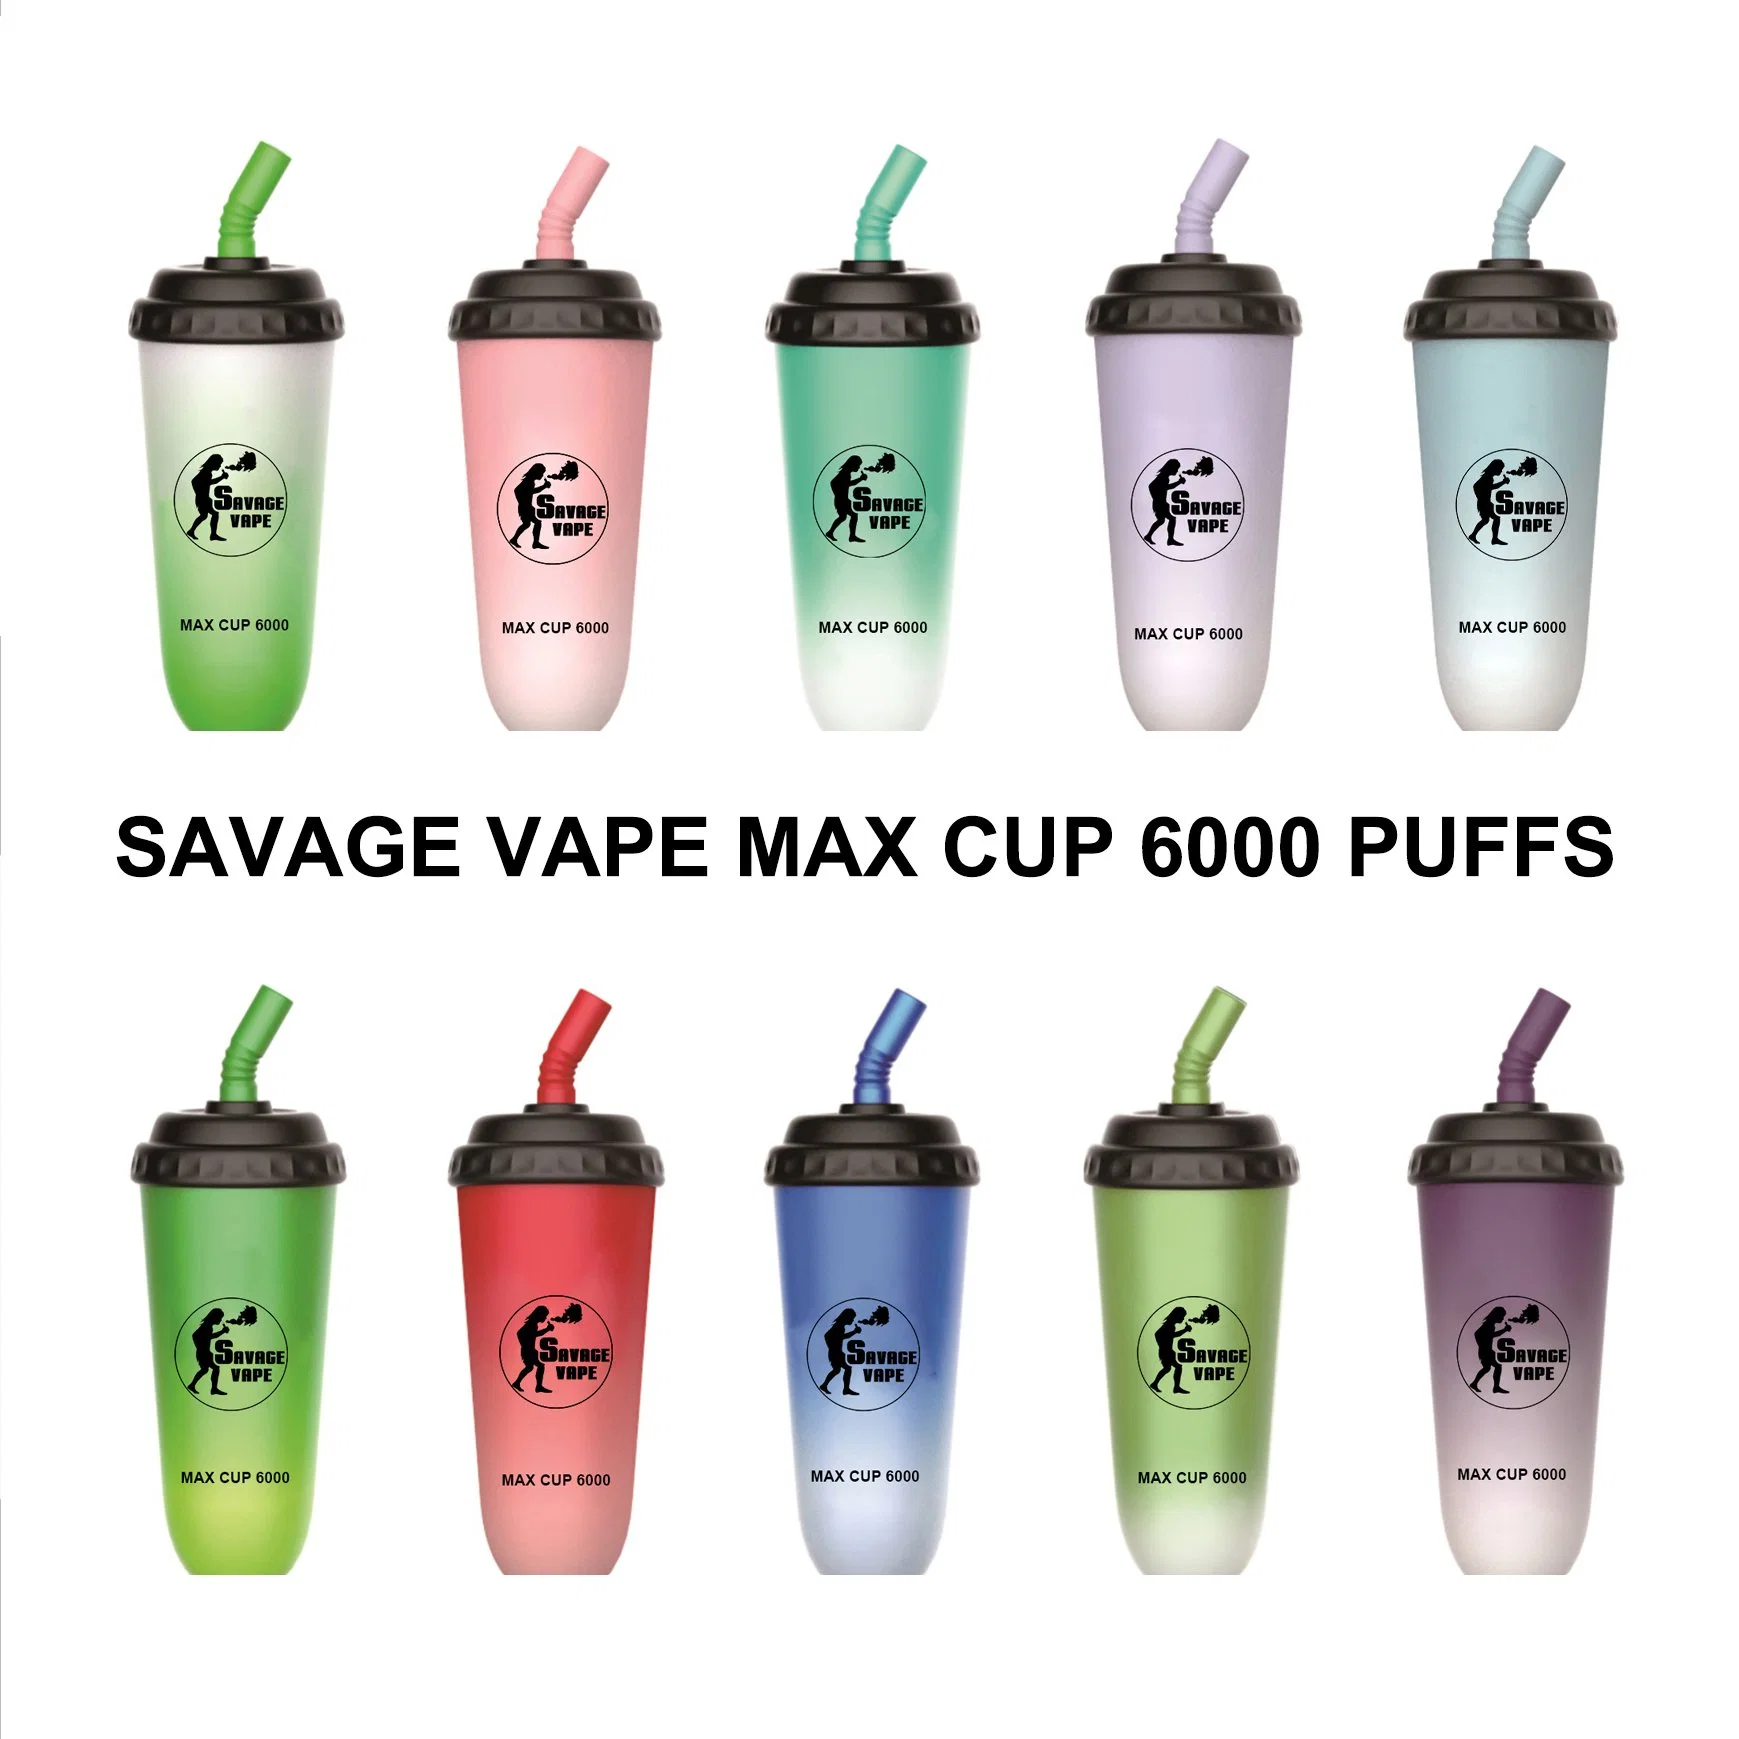 Savage Max Cup Wholesale Disposable Vaporizer Pod 6000 Puffs Milk Tea Cup Mesh Coil E-Cigarette Vape Pen Multi Flavored Vapor Vapes